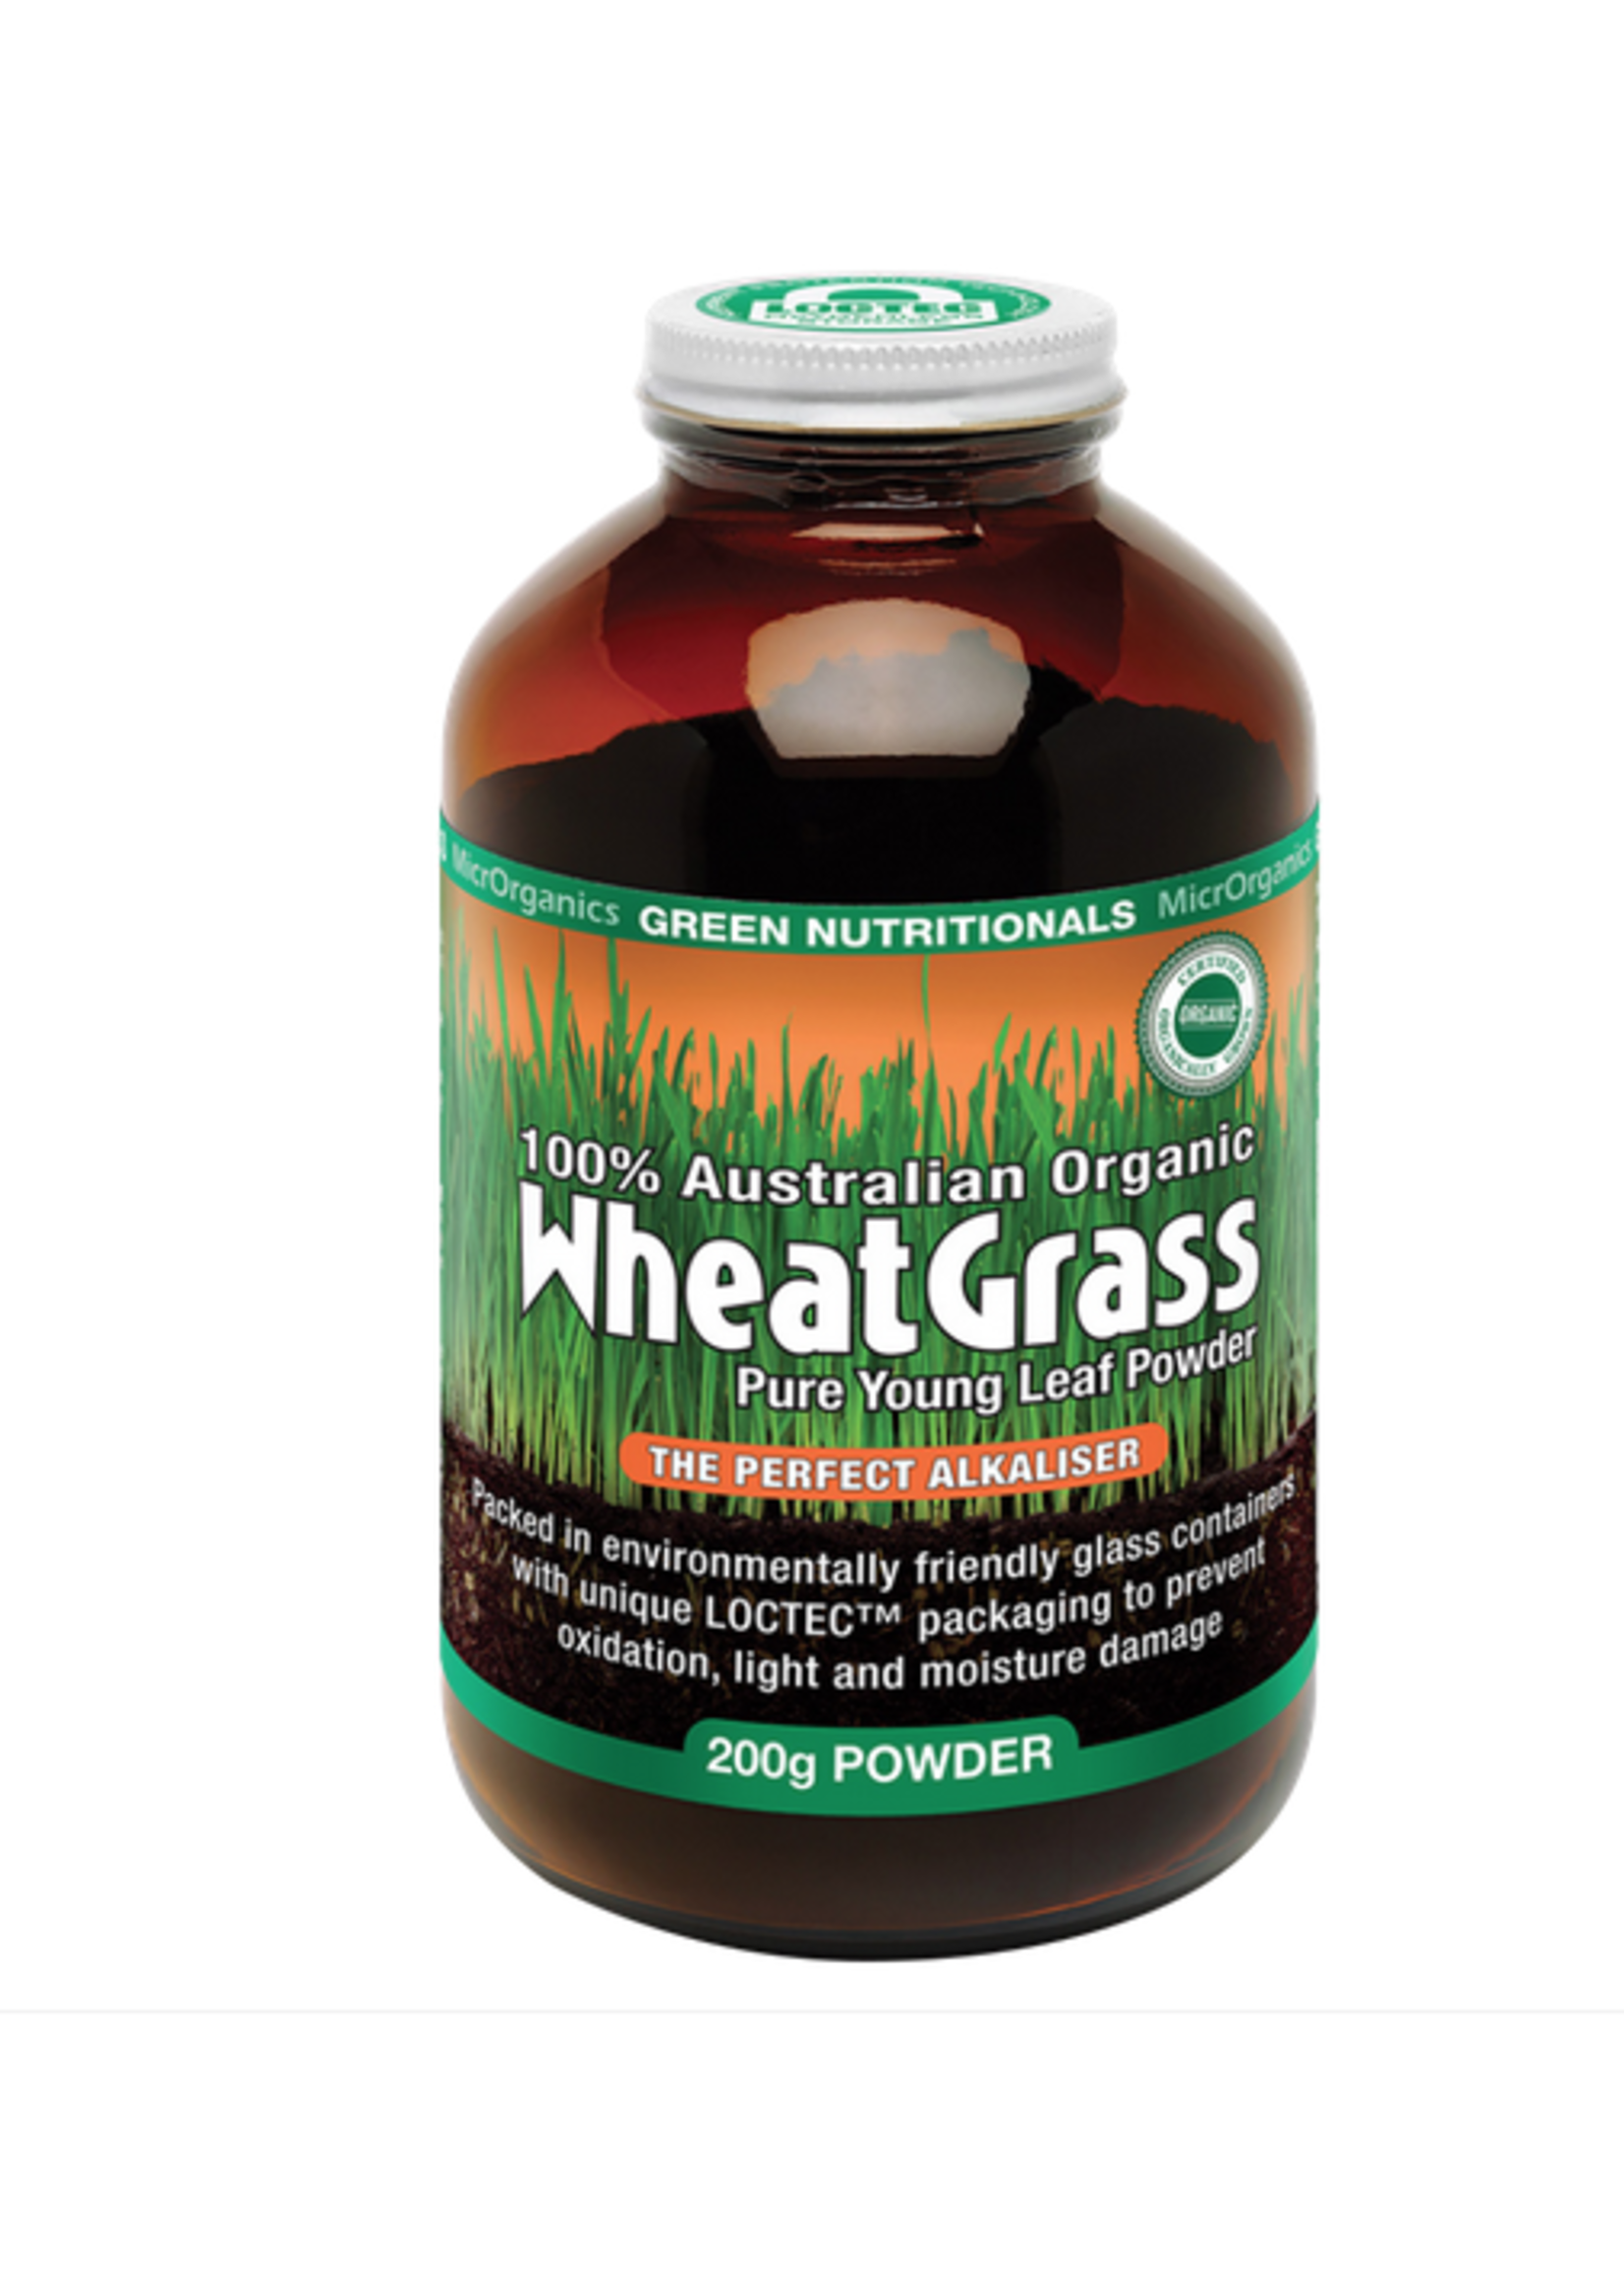 Green Nutritionals Green Nutritionals 100% Australian Organic Wheat Grass 200g